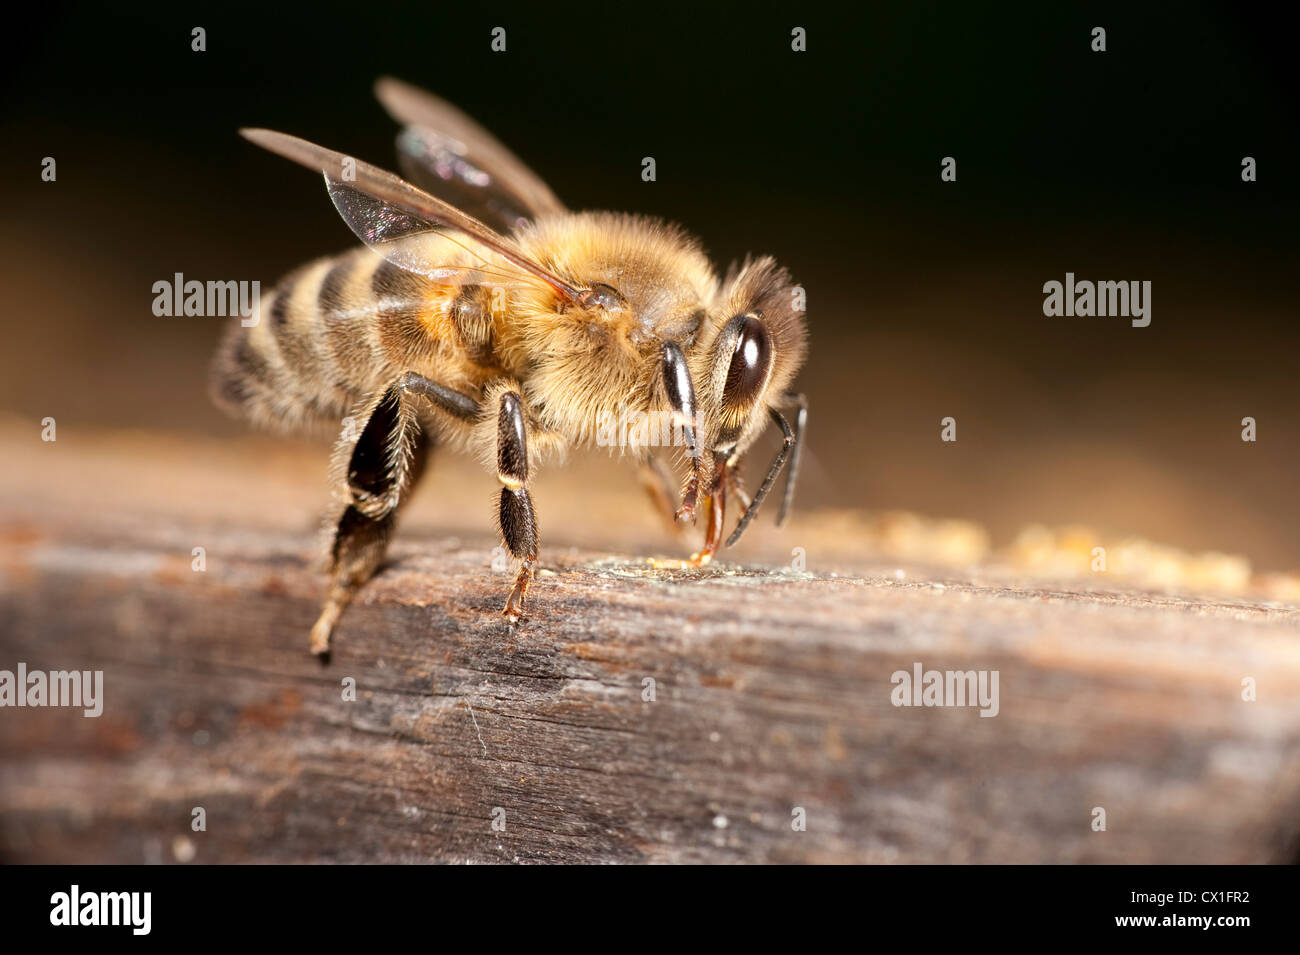 Lavoratore Honey Bee Apis mellifera Kent REGNO UNITO sul lato di alveare che mostra corpo pieno gambe ali di testa antenne di occhio Foto Stock